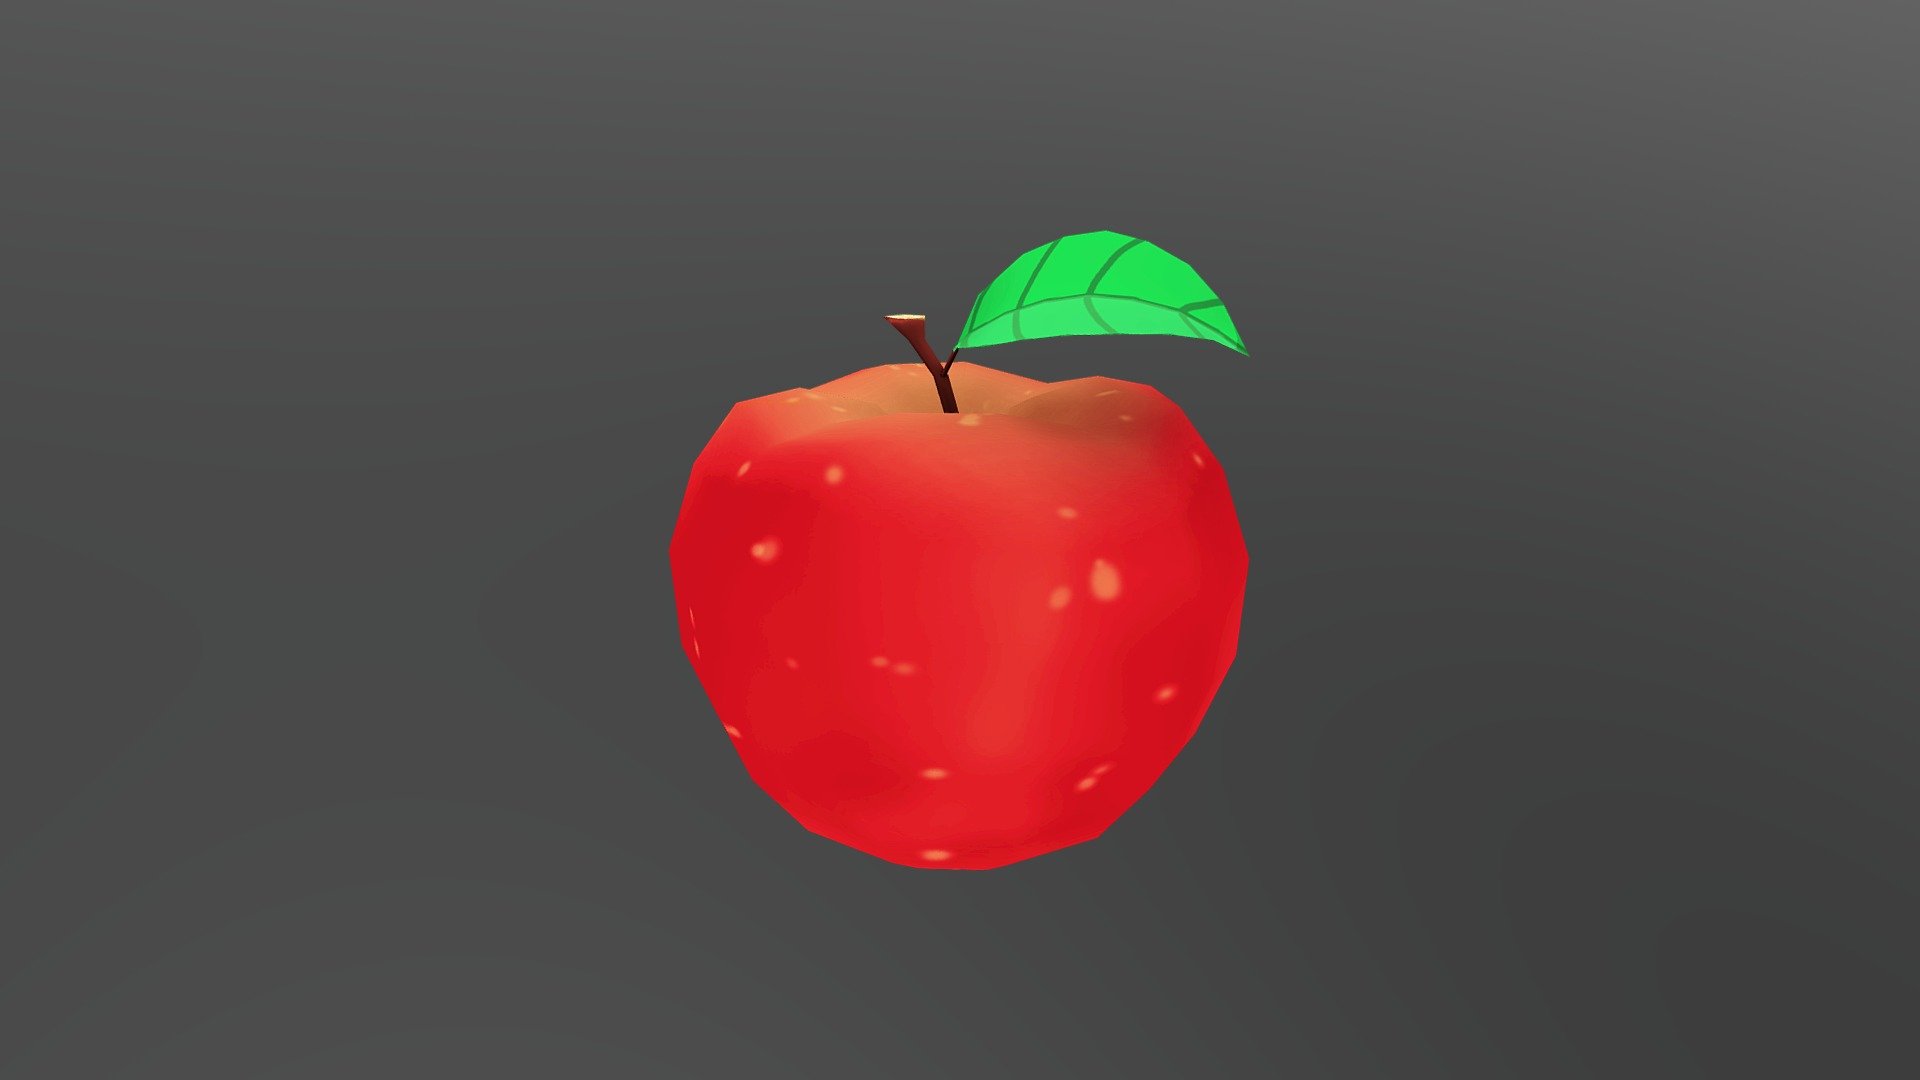 I repeat, Fuji Apples are the Best Apples! - Fuji Apples are the Best Apples! - 3D model by Sonia.King 3d model